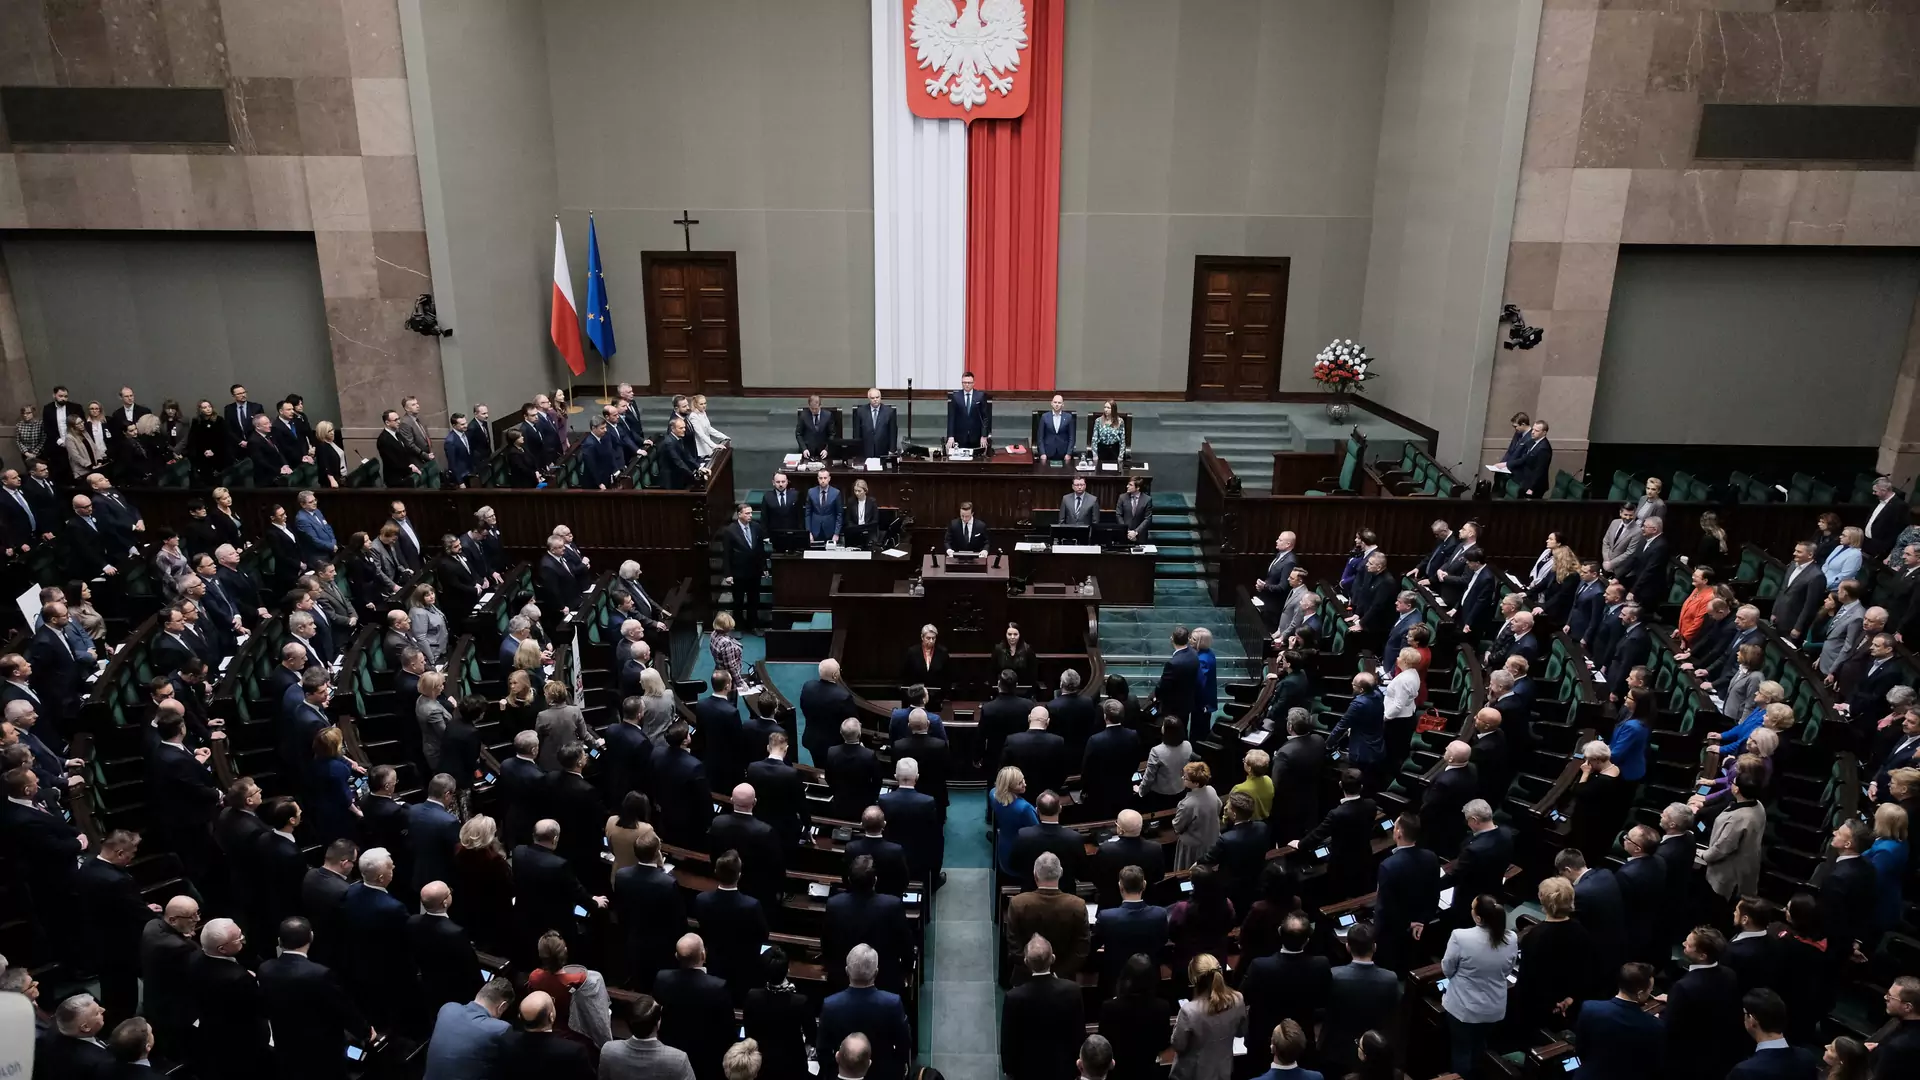 Jak Polacy oceniają nowy rząd? Zaskakujący wynik wśród wyborców PiS